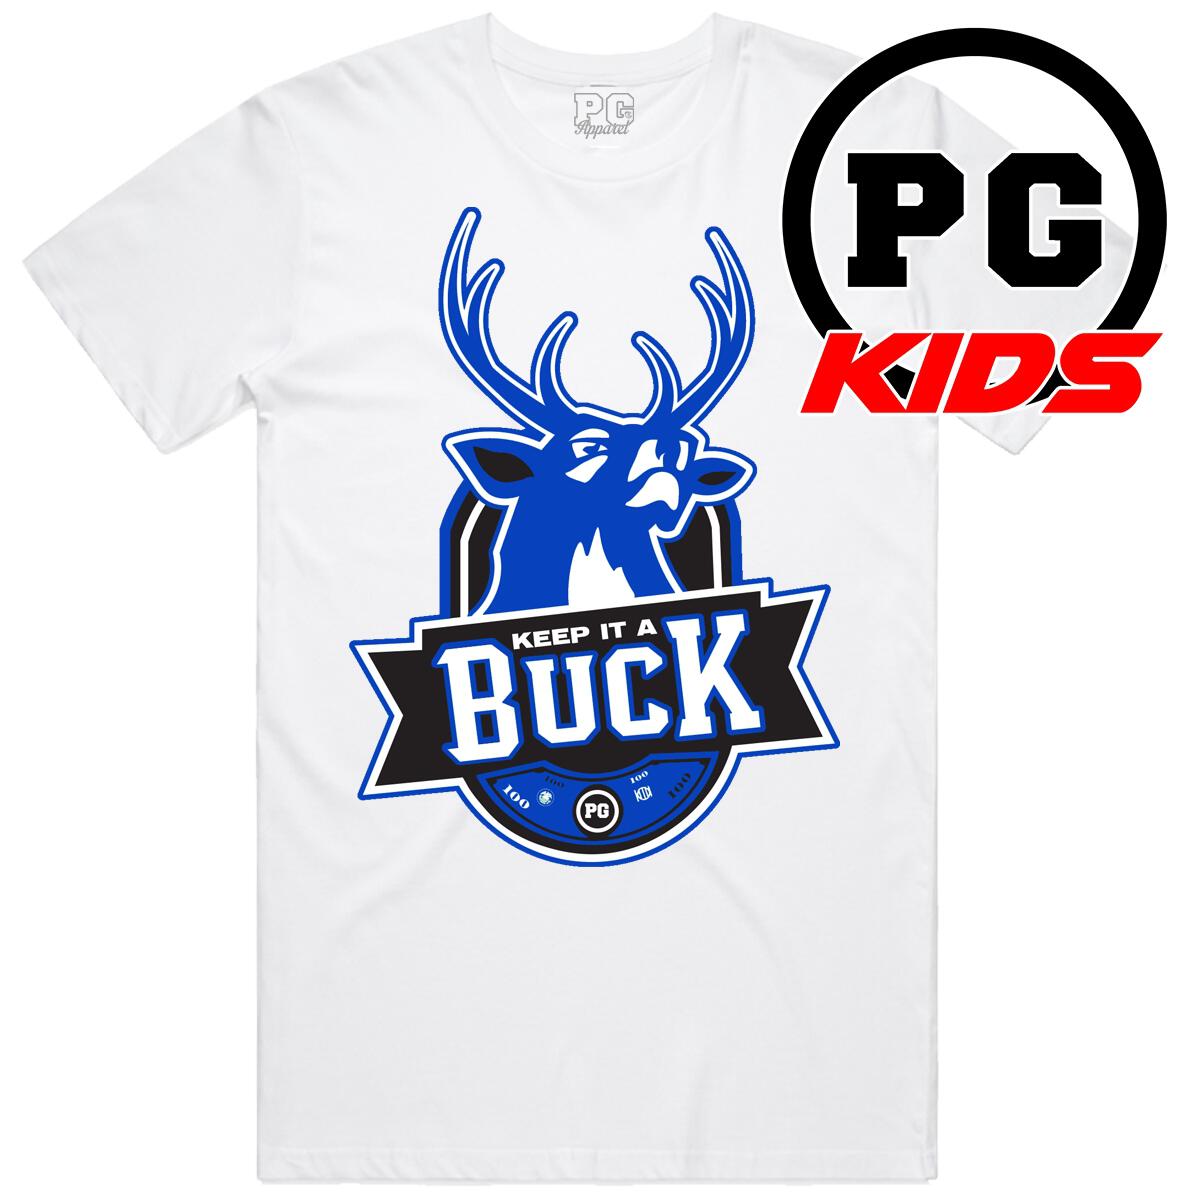 Keep It A Buck T-Shirt